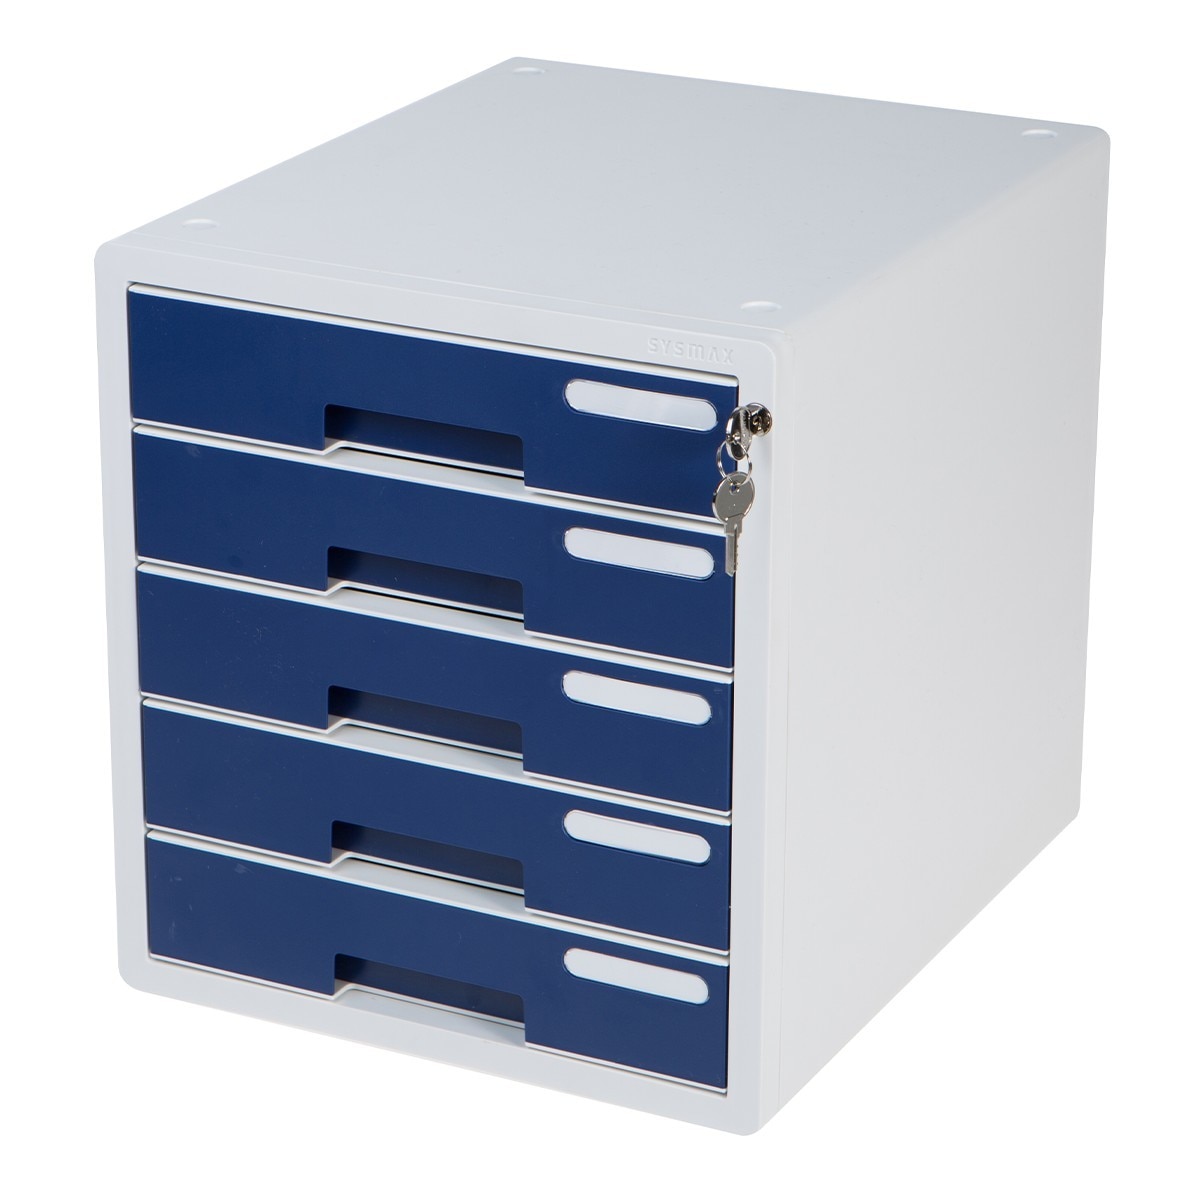 Sysmax 桌上型鎖定式五層資料櫃 深藍